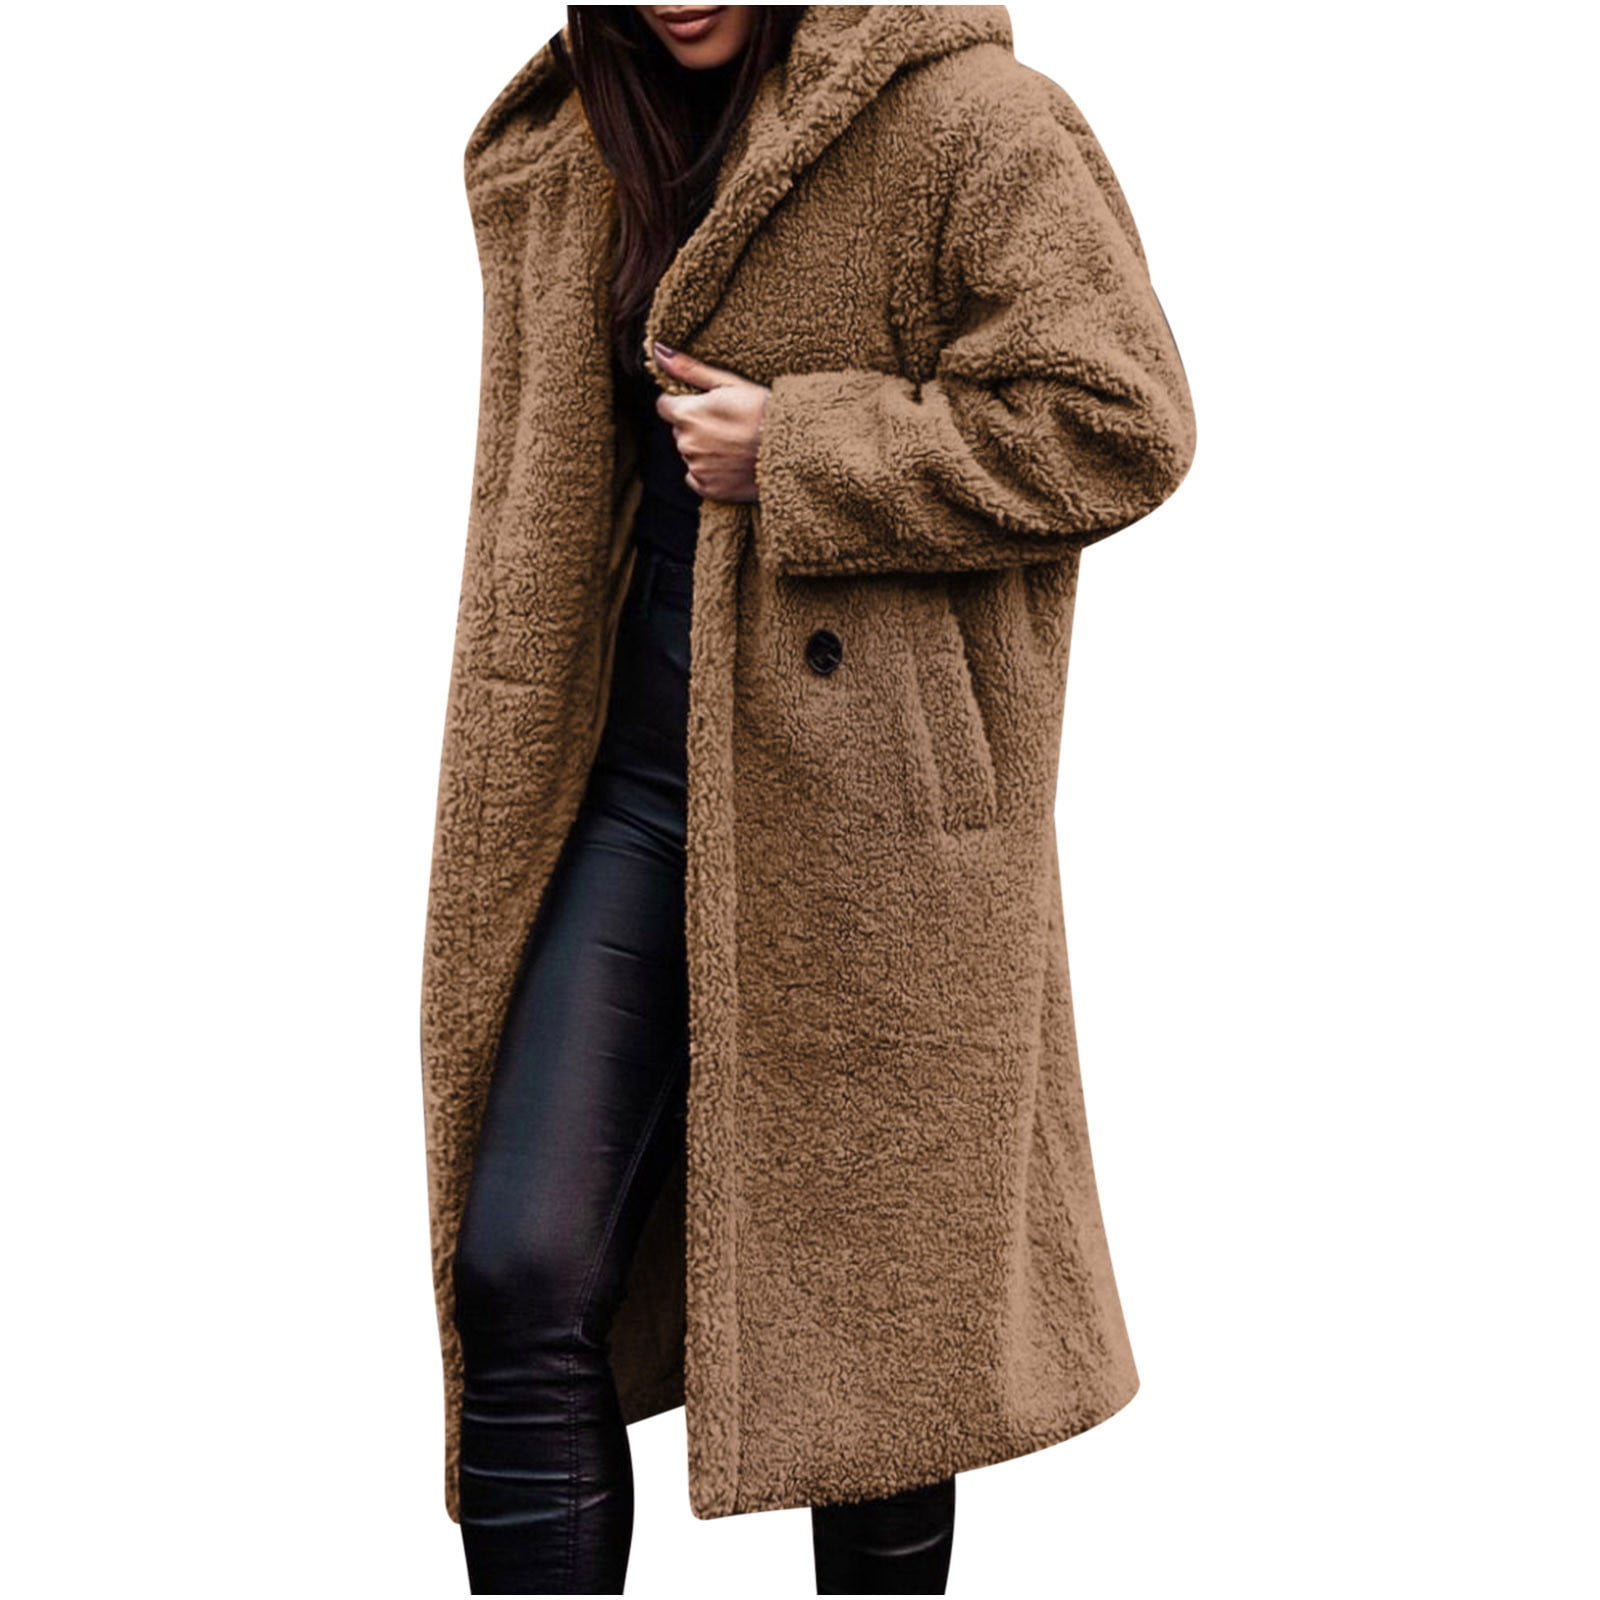 Hfyihgf Womens Trendy Winter Coat Faux Fur Fuzzy Fleece Sherpa Jacket  Casual Lapel Button Down Long Pockets Teddy Warm Outwear(Khaki,XL)